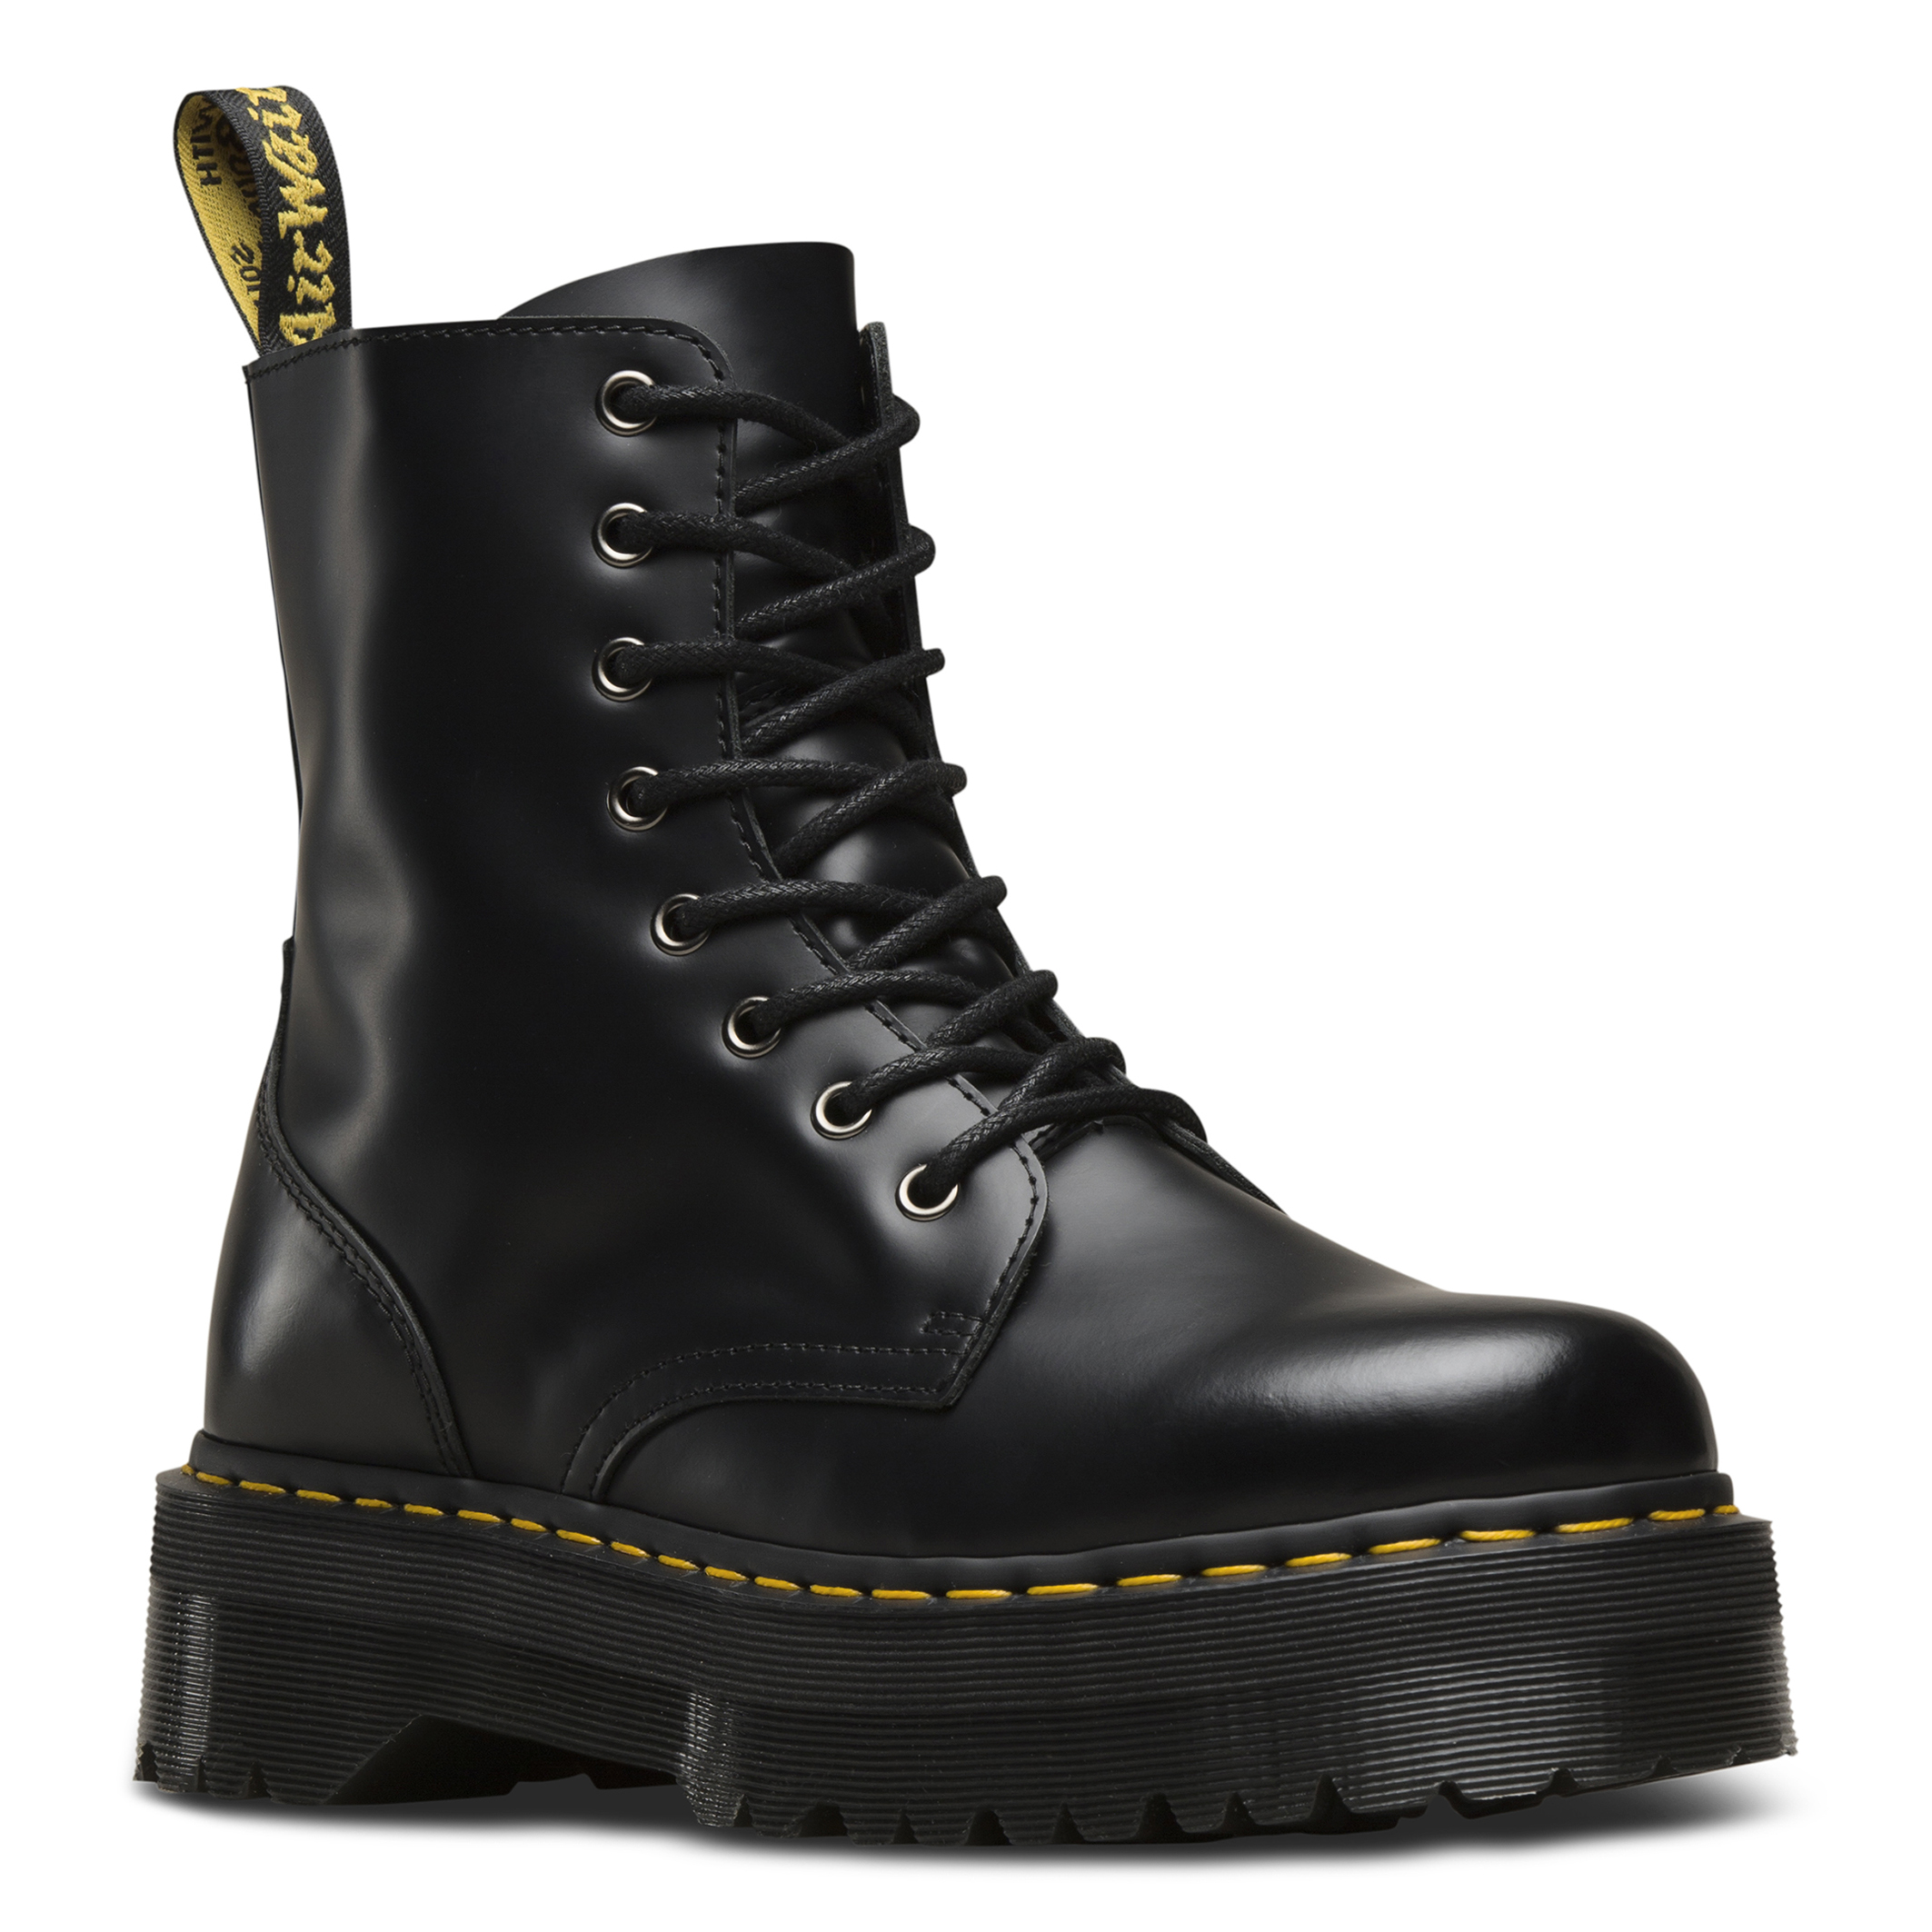 Jadon smooth platform boots in leather, black, Dr. Martens | La